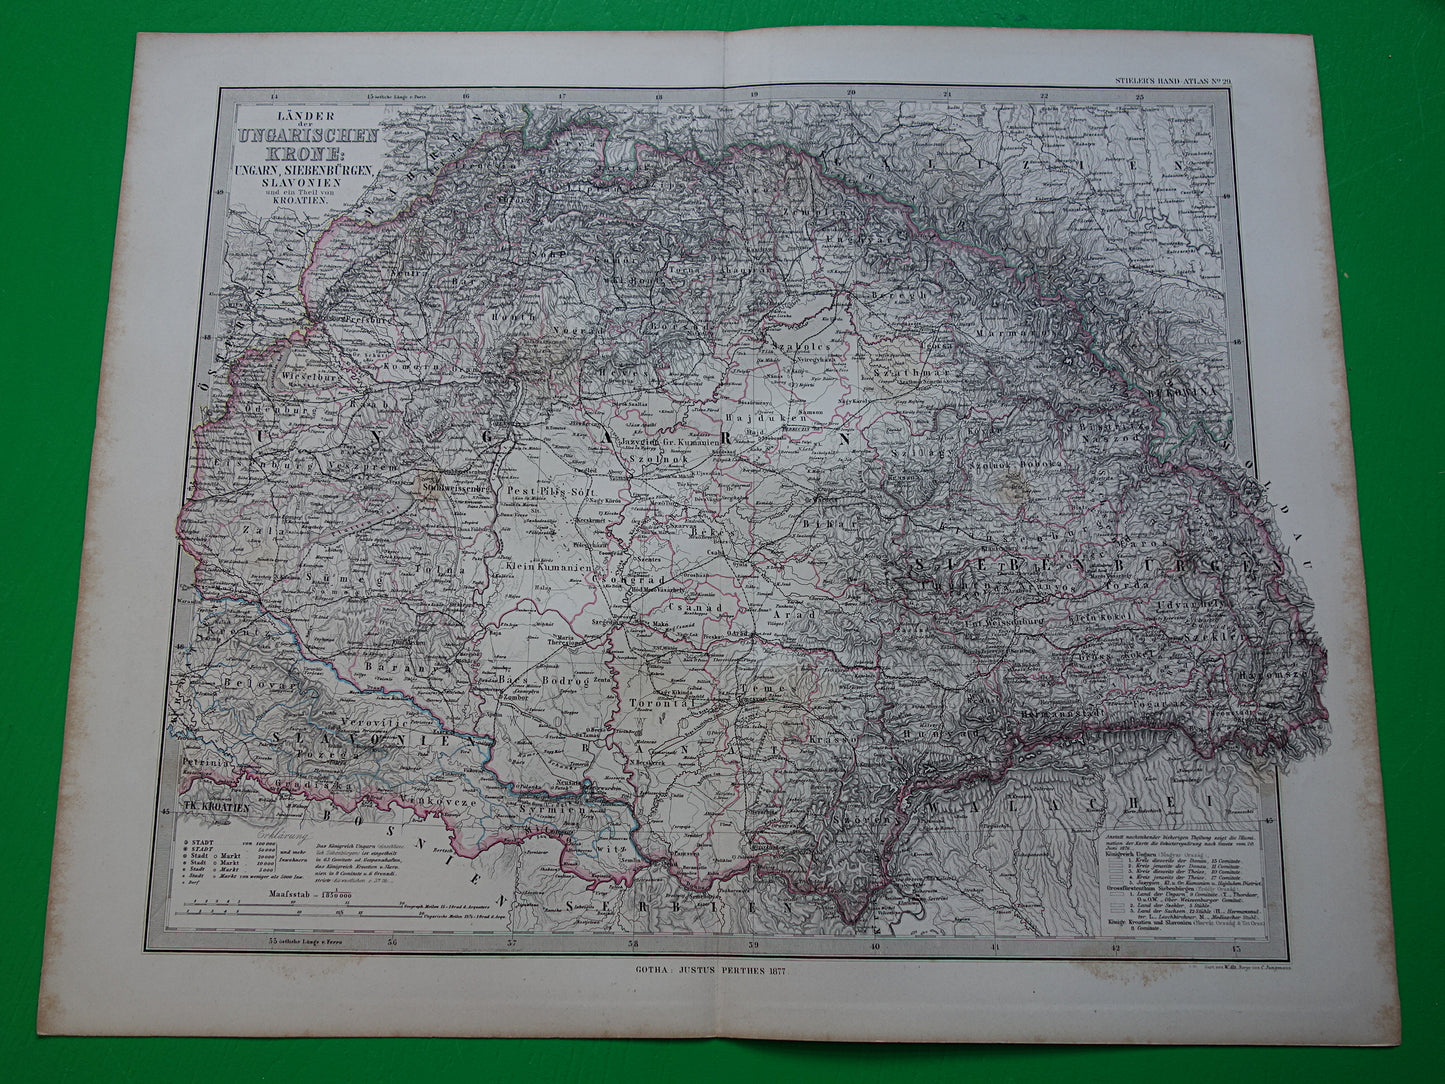 Hongarije Roemenië vintage landkaart uit 1885 van Budapest Transsylvanië Originele oude antieke kaart met jaartal historische kaarten Oostenrijk-Hongarije